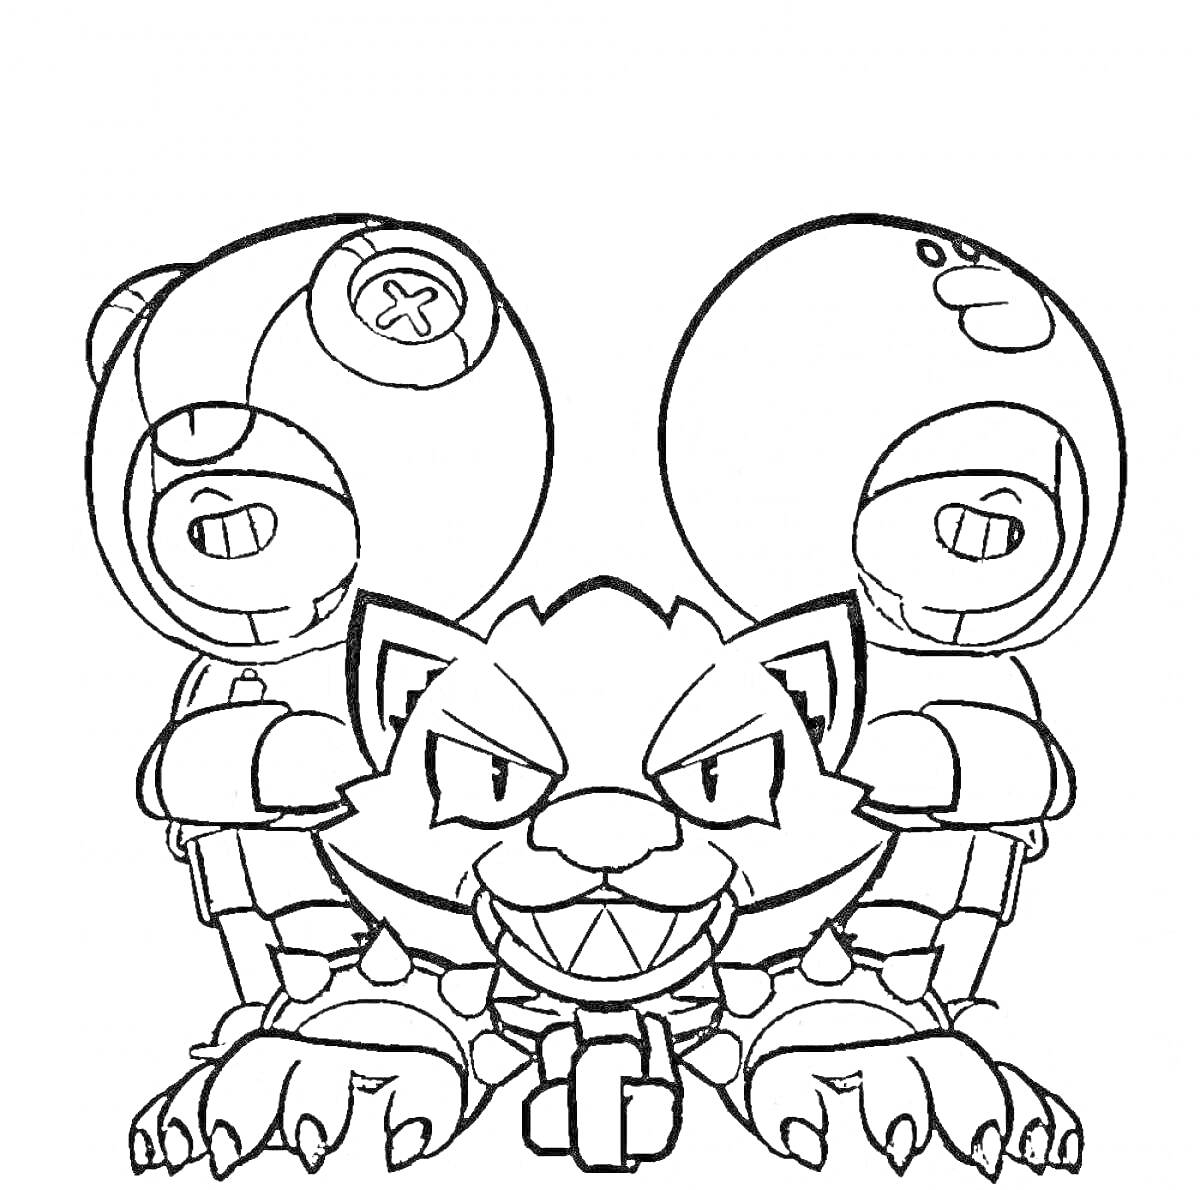 Раскраска Две фигуры в шлемах с крестами и с кошкой с улыбкой посередине